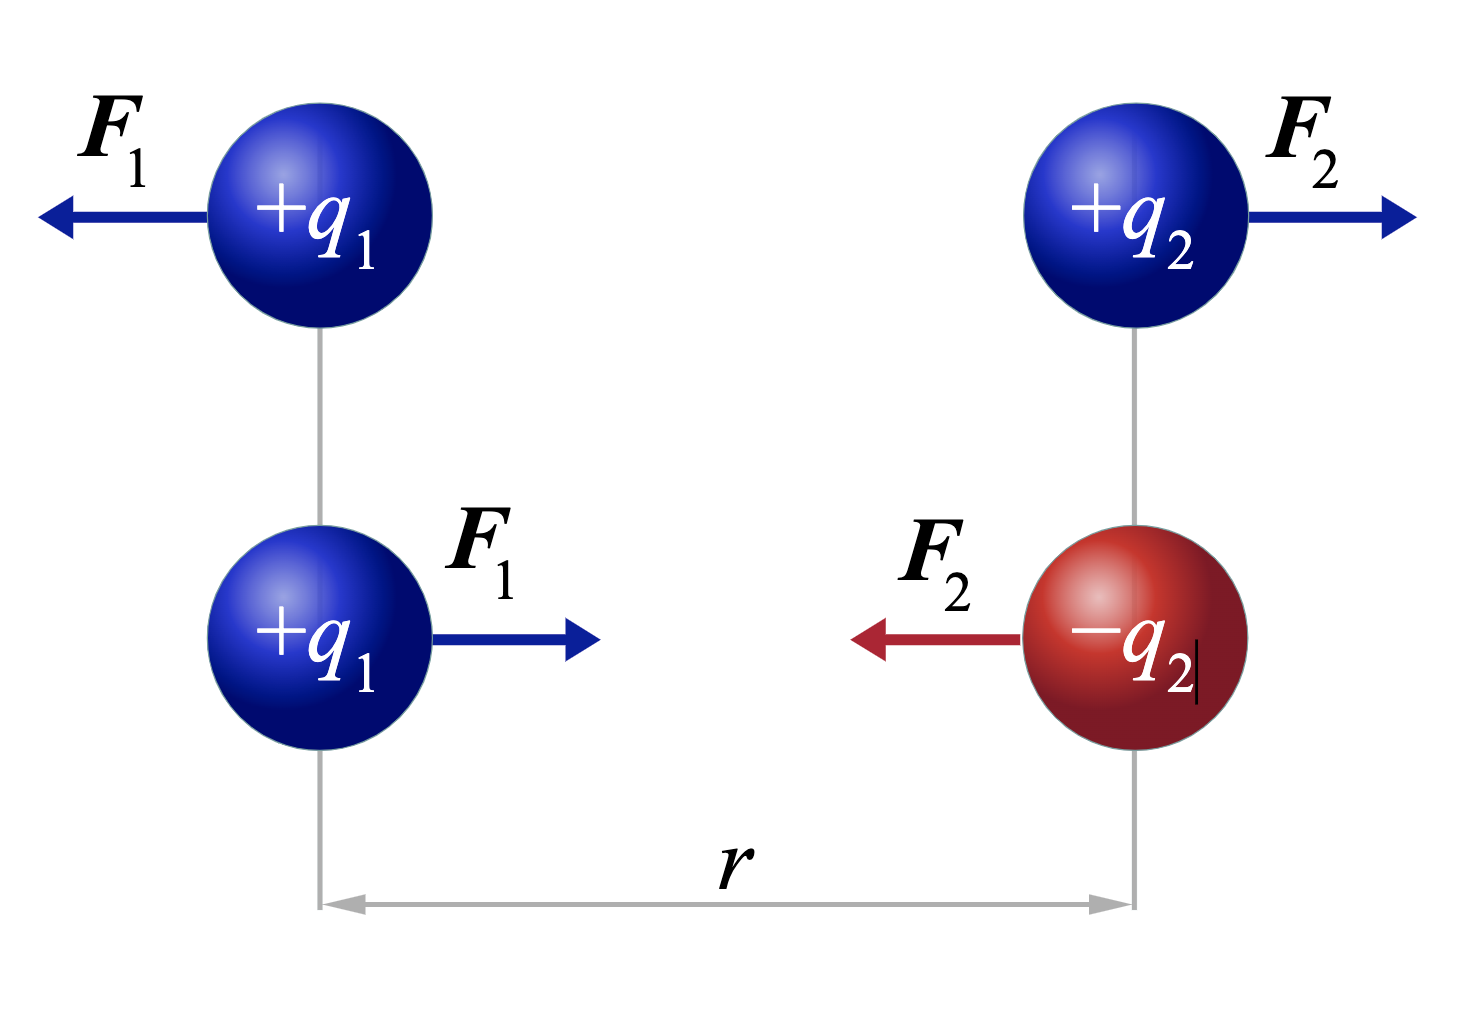 Representación de las fuerzas eléctricas que se producen con las distintas cargas